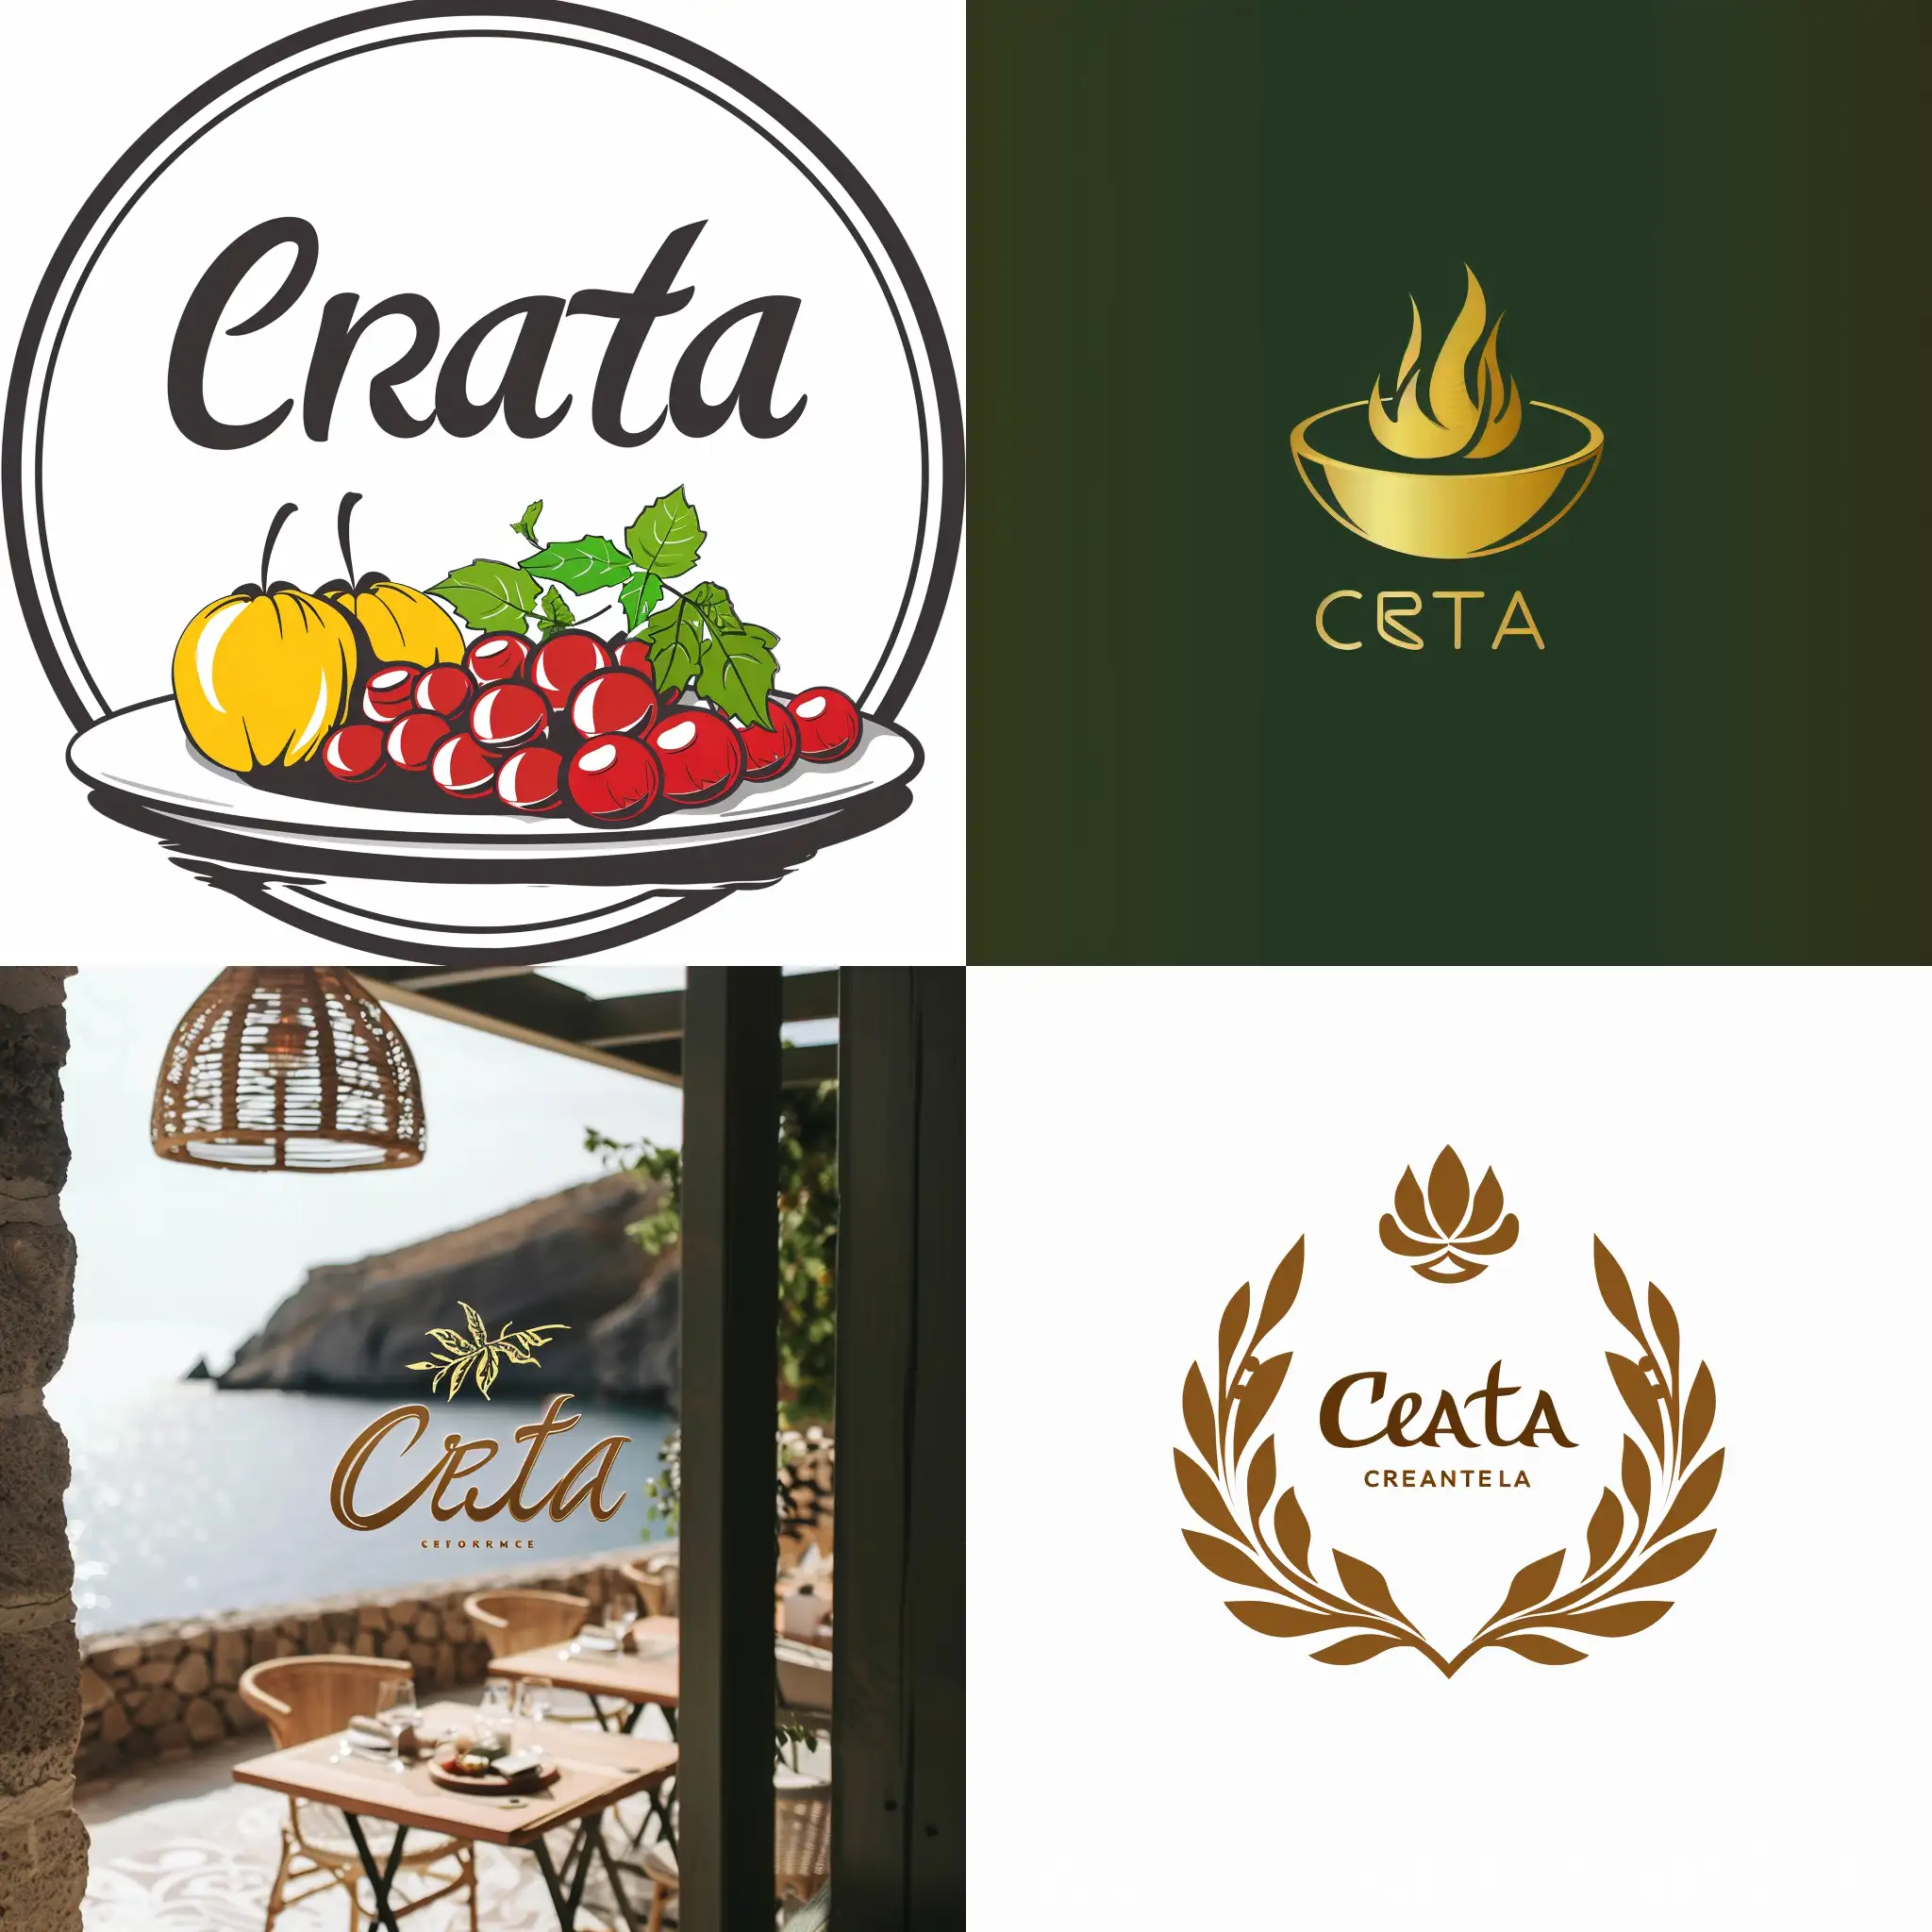 elabora un logo para una empresa de catering que se llama Creta